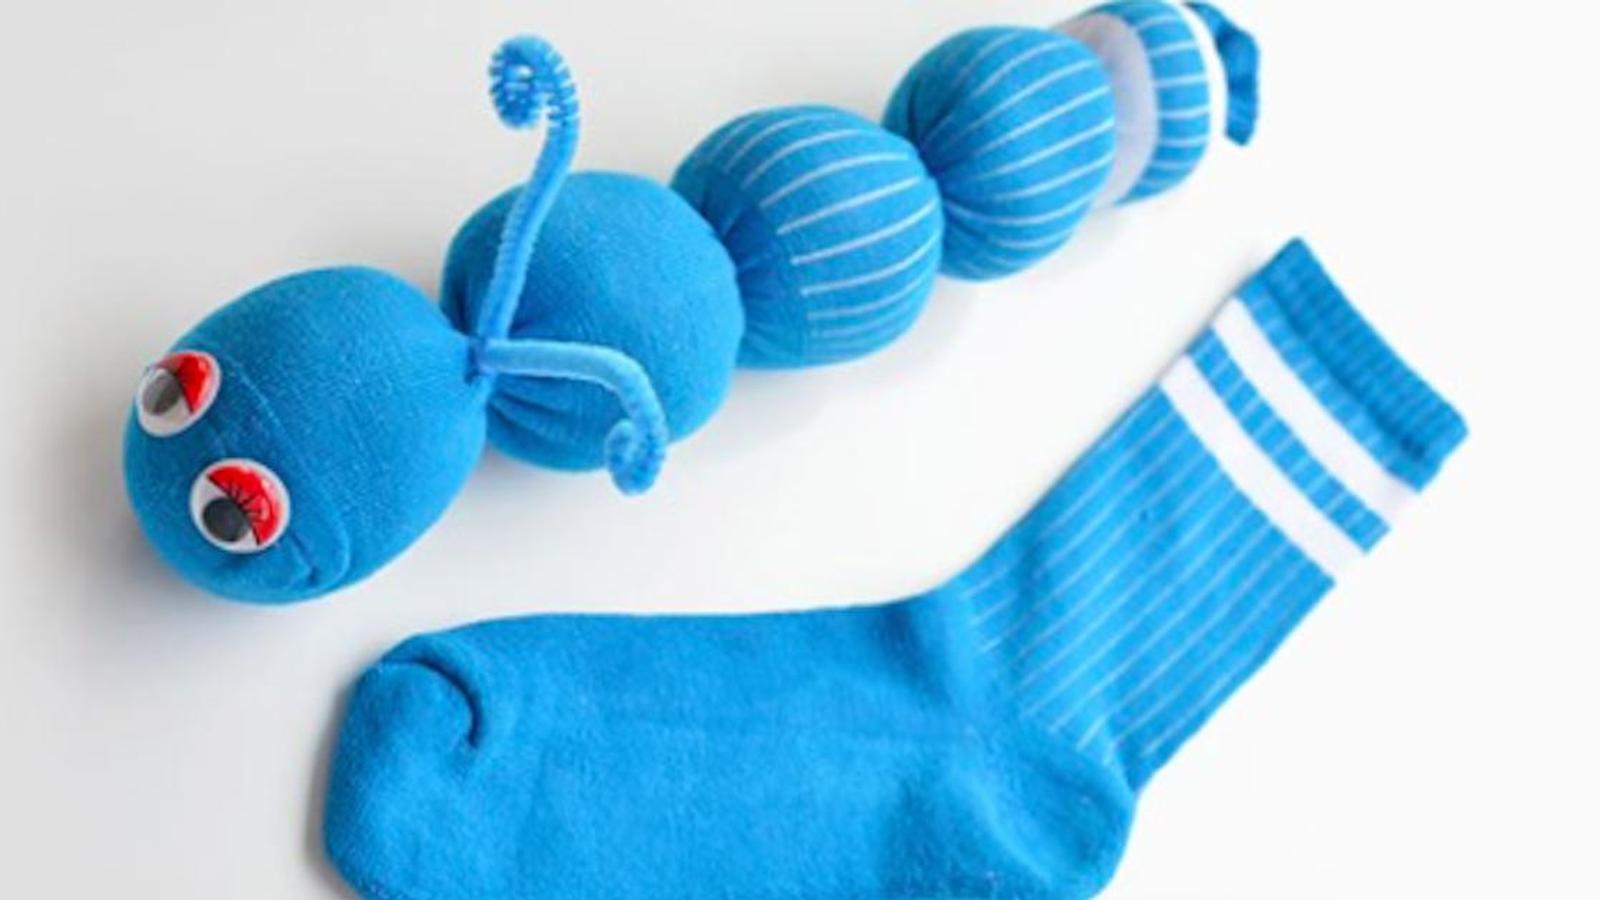 Bricolage facile: comment faire des chenilles en chaussettes sans